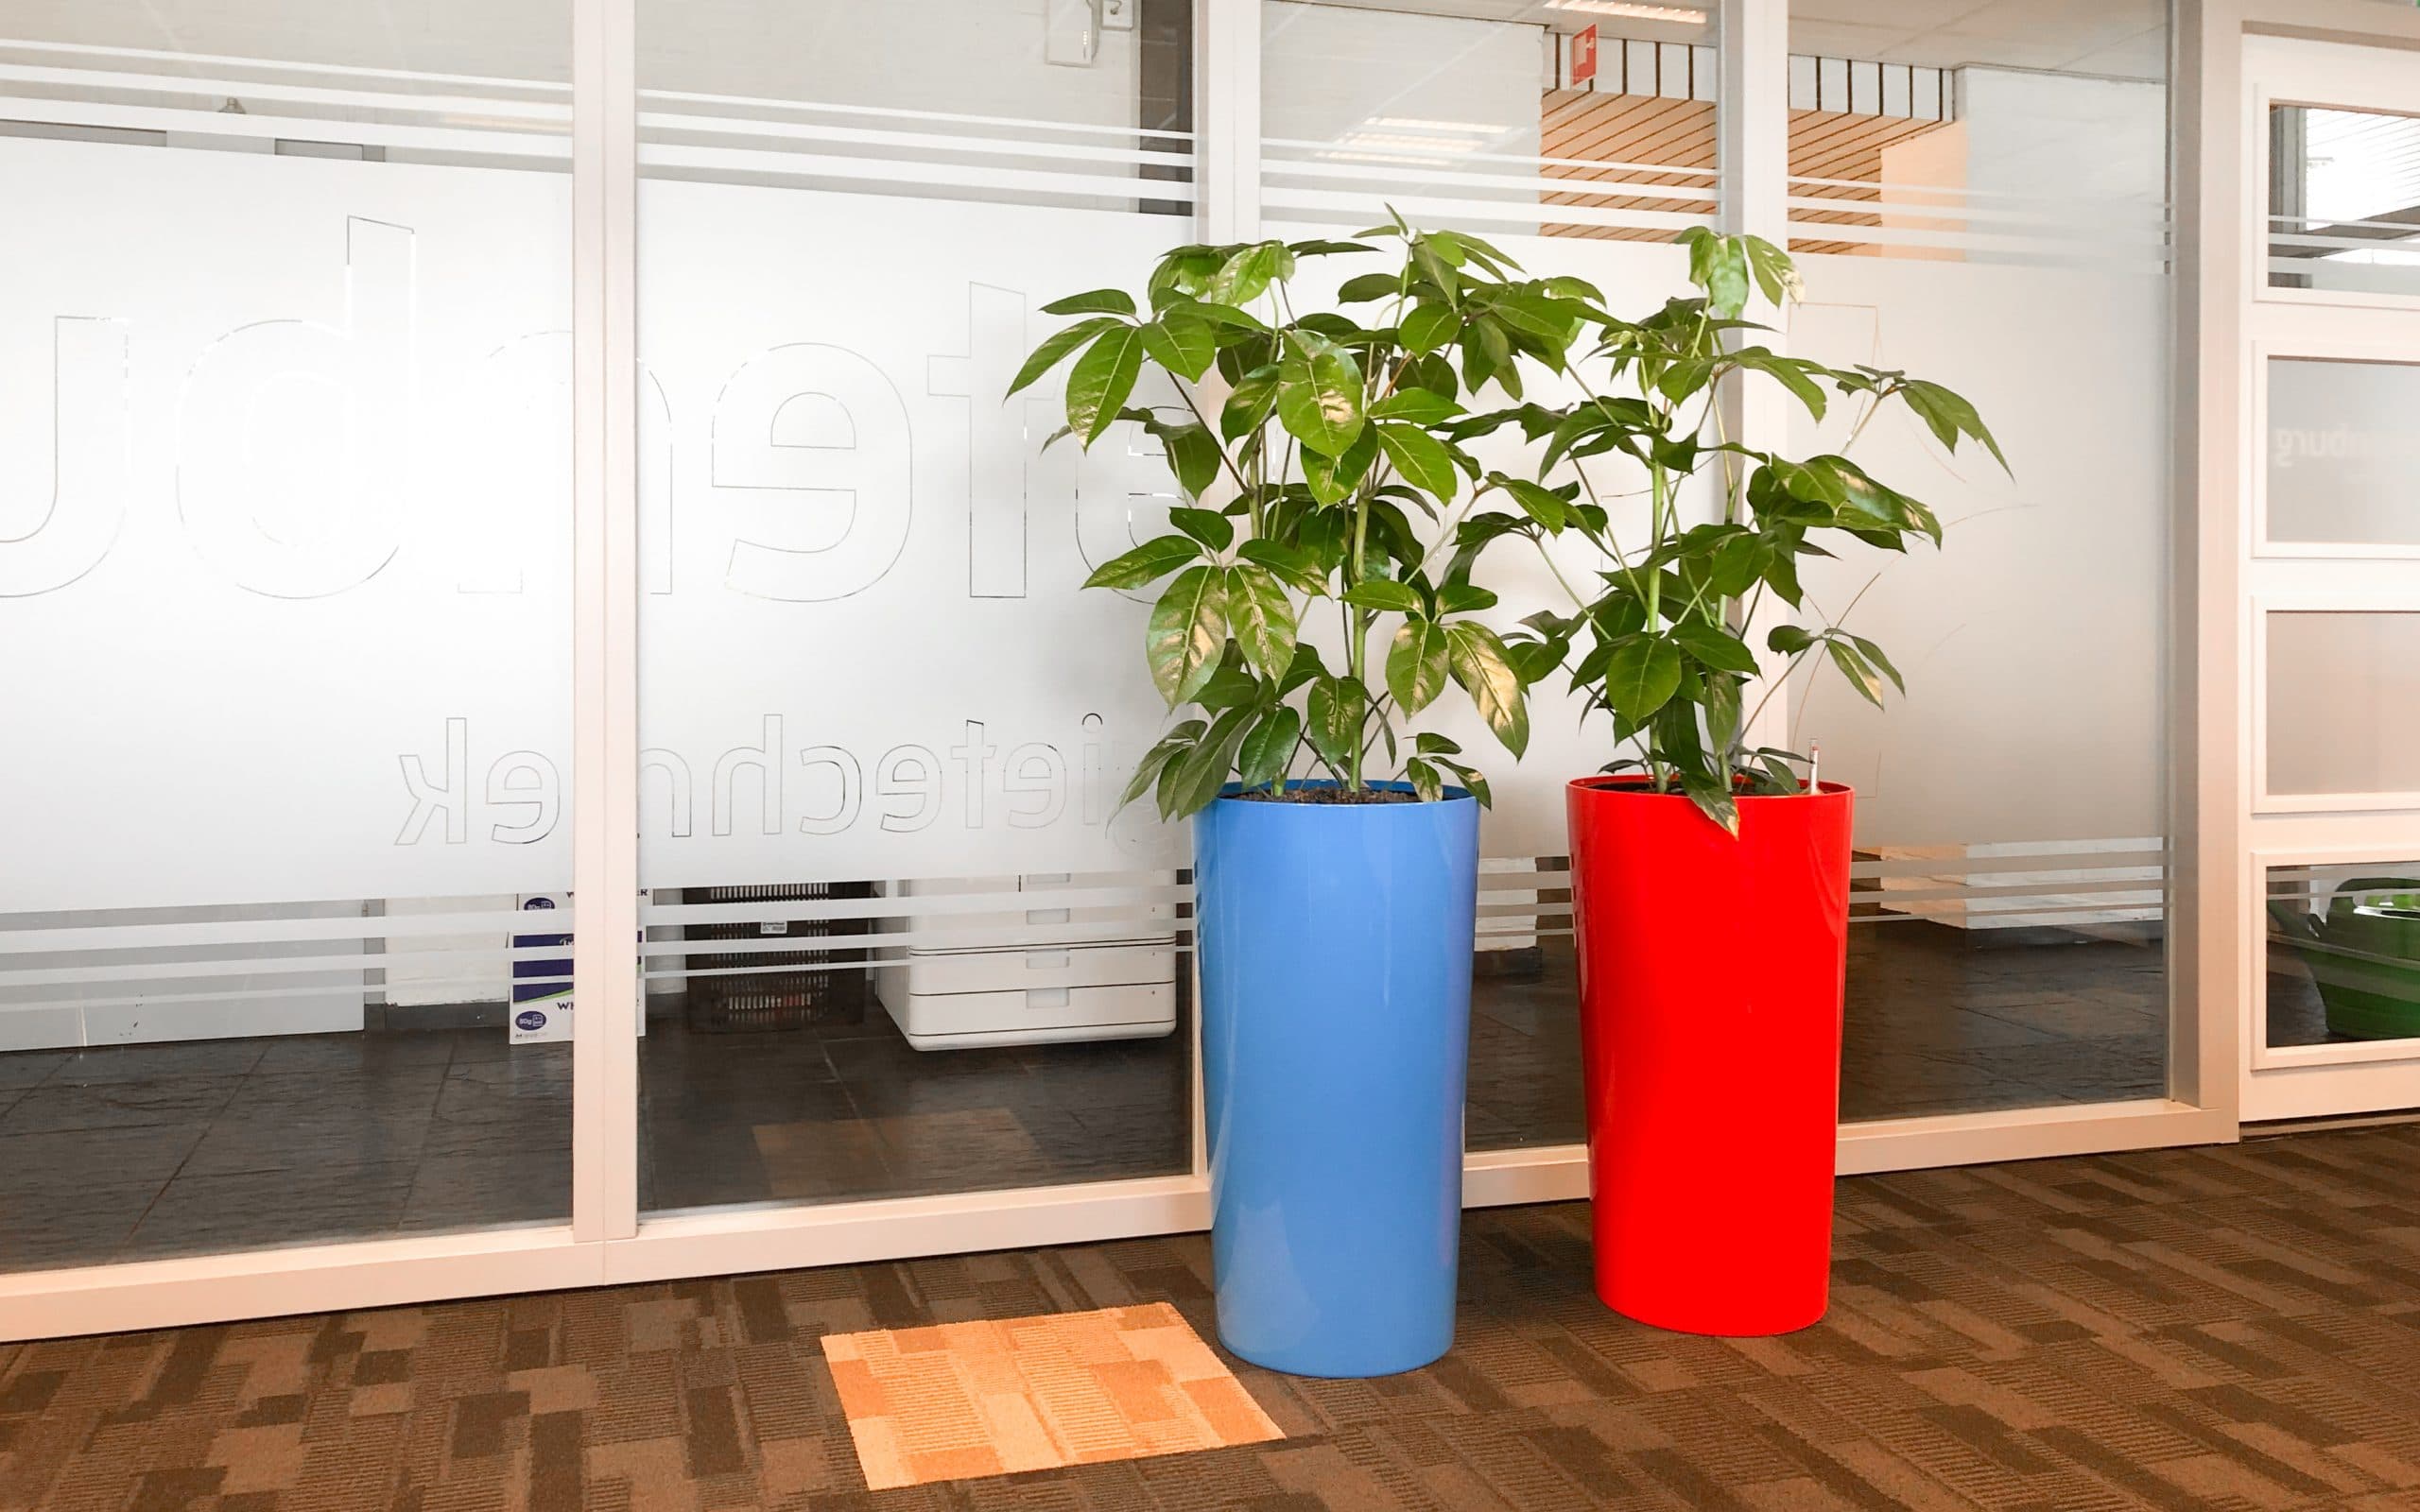 Kleurijke plantenbak bij batenburg energietechniek groene werkplek kantoorbeplanting